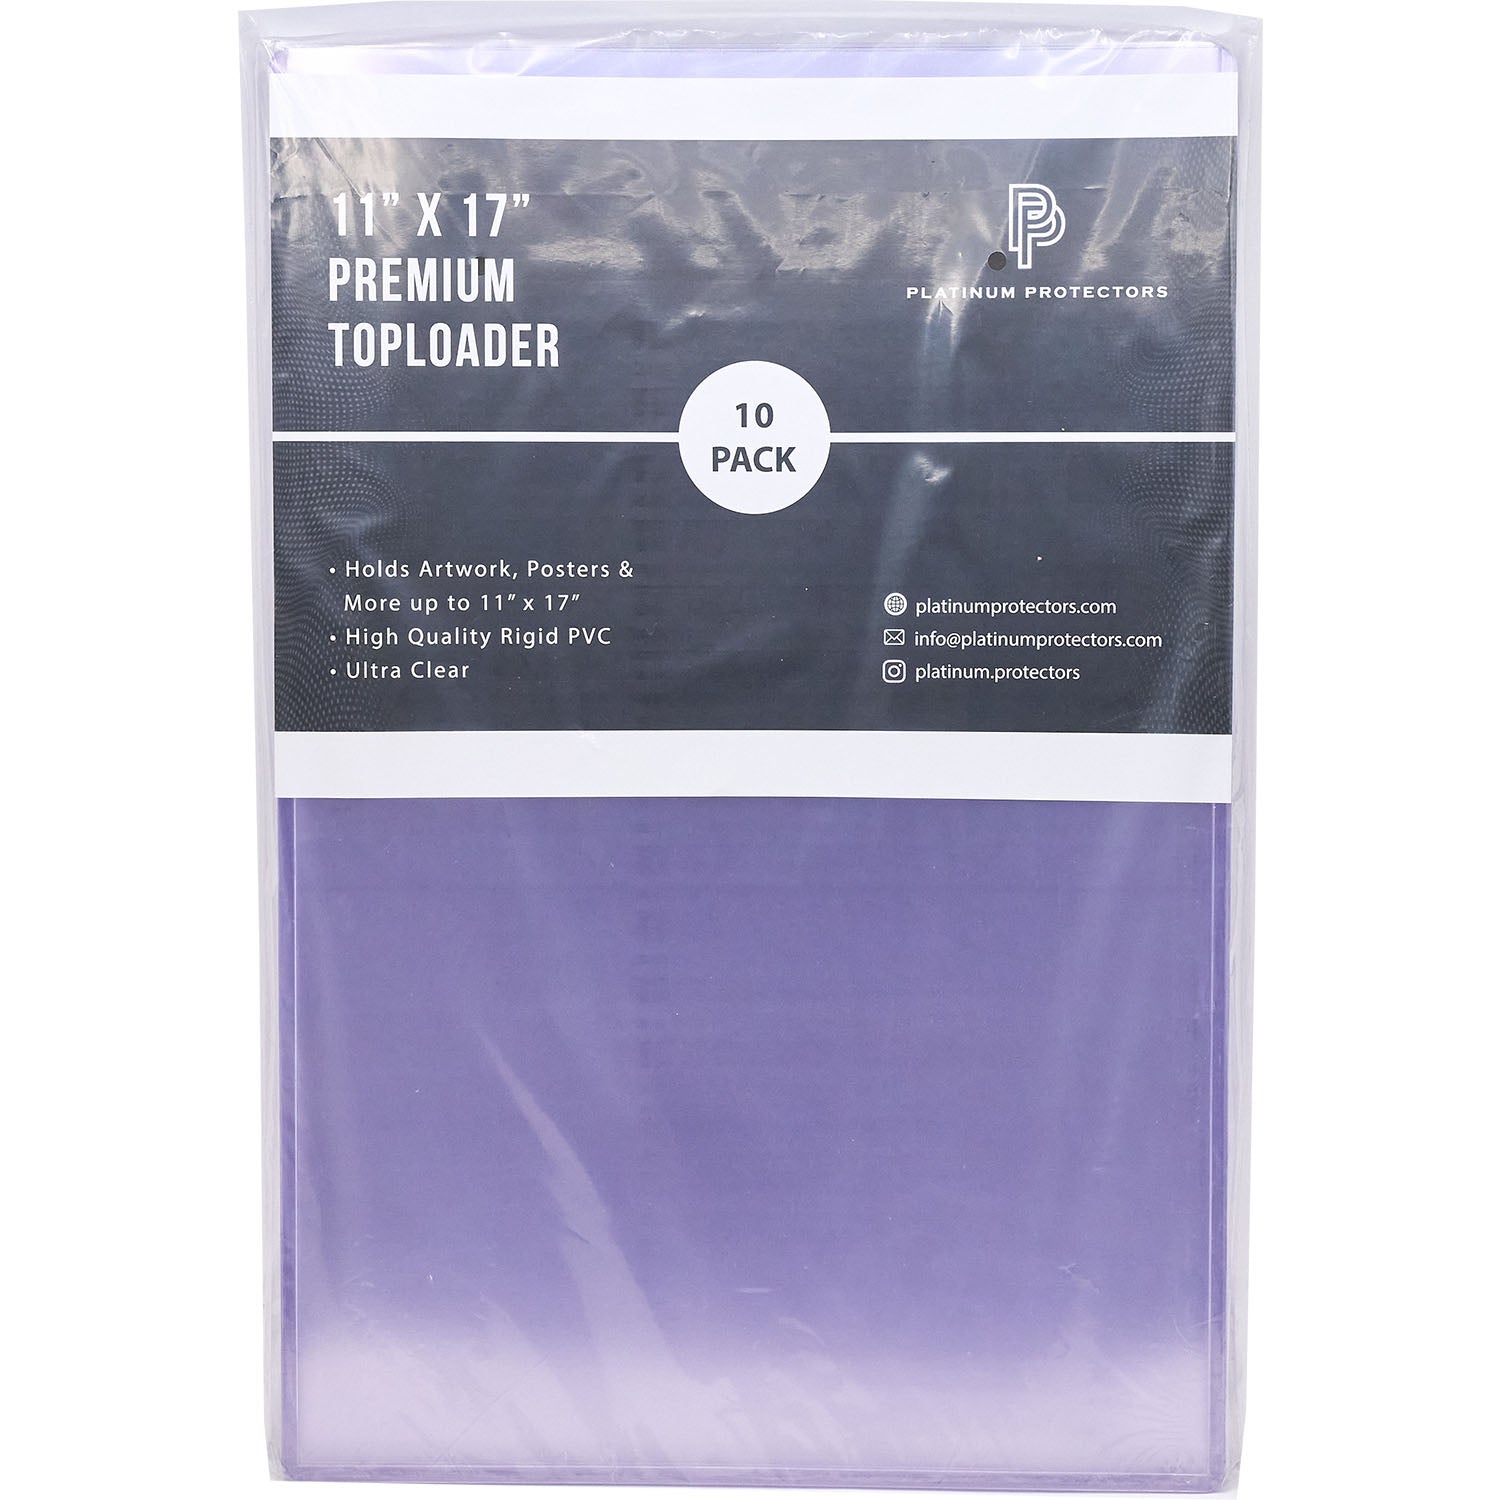 Platinum Protectors Premium 11" x 17" Print Toploaders